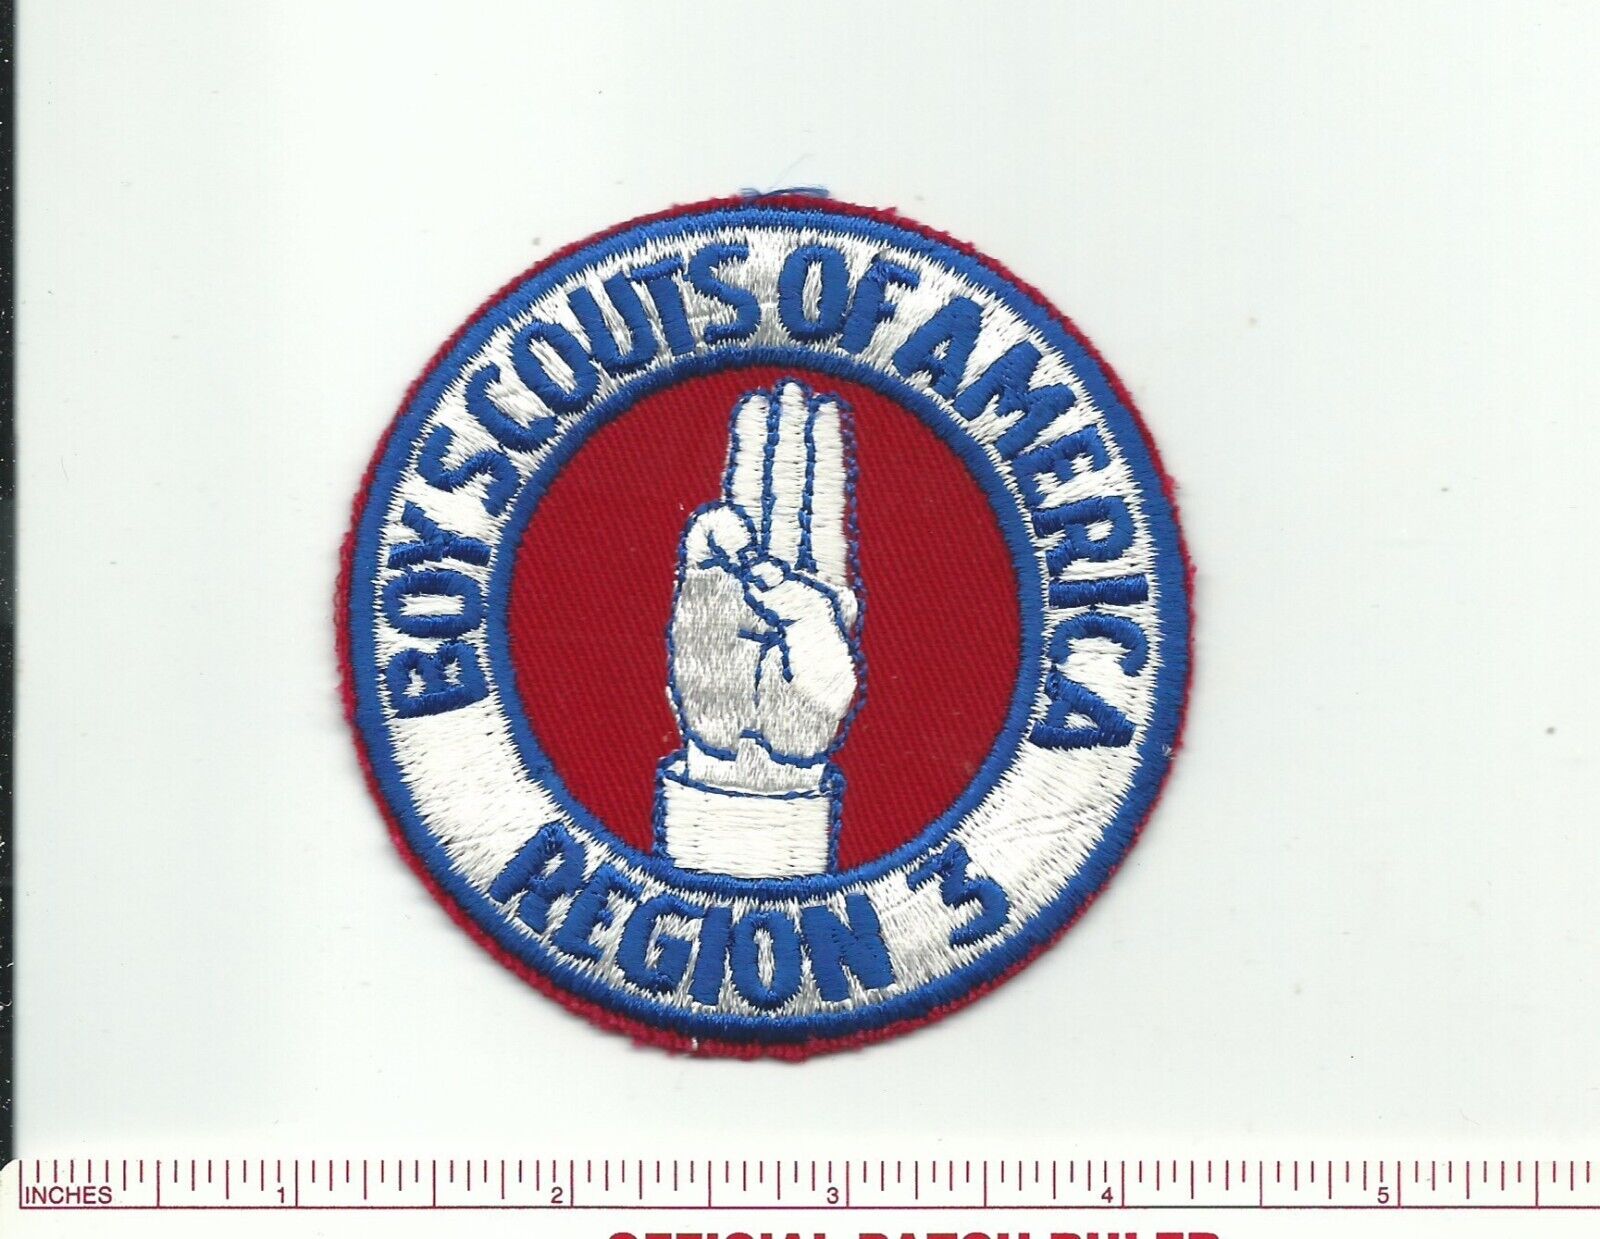 CU SCOUT BSA REGION THREE 3 REPRODUCTION 1985 ERA PATCH BLUE CE PB TL INSIGNIA 